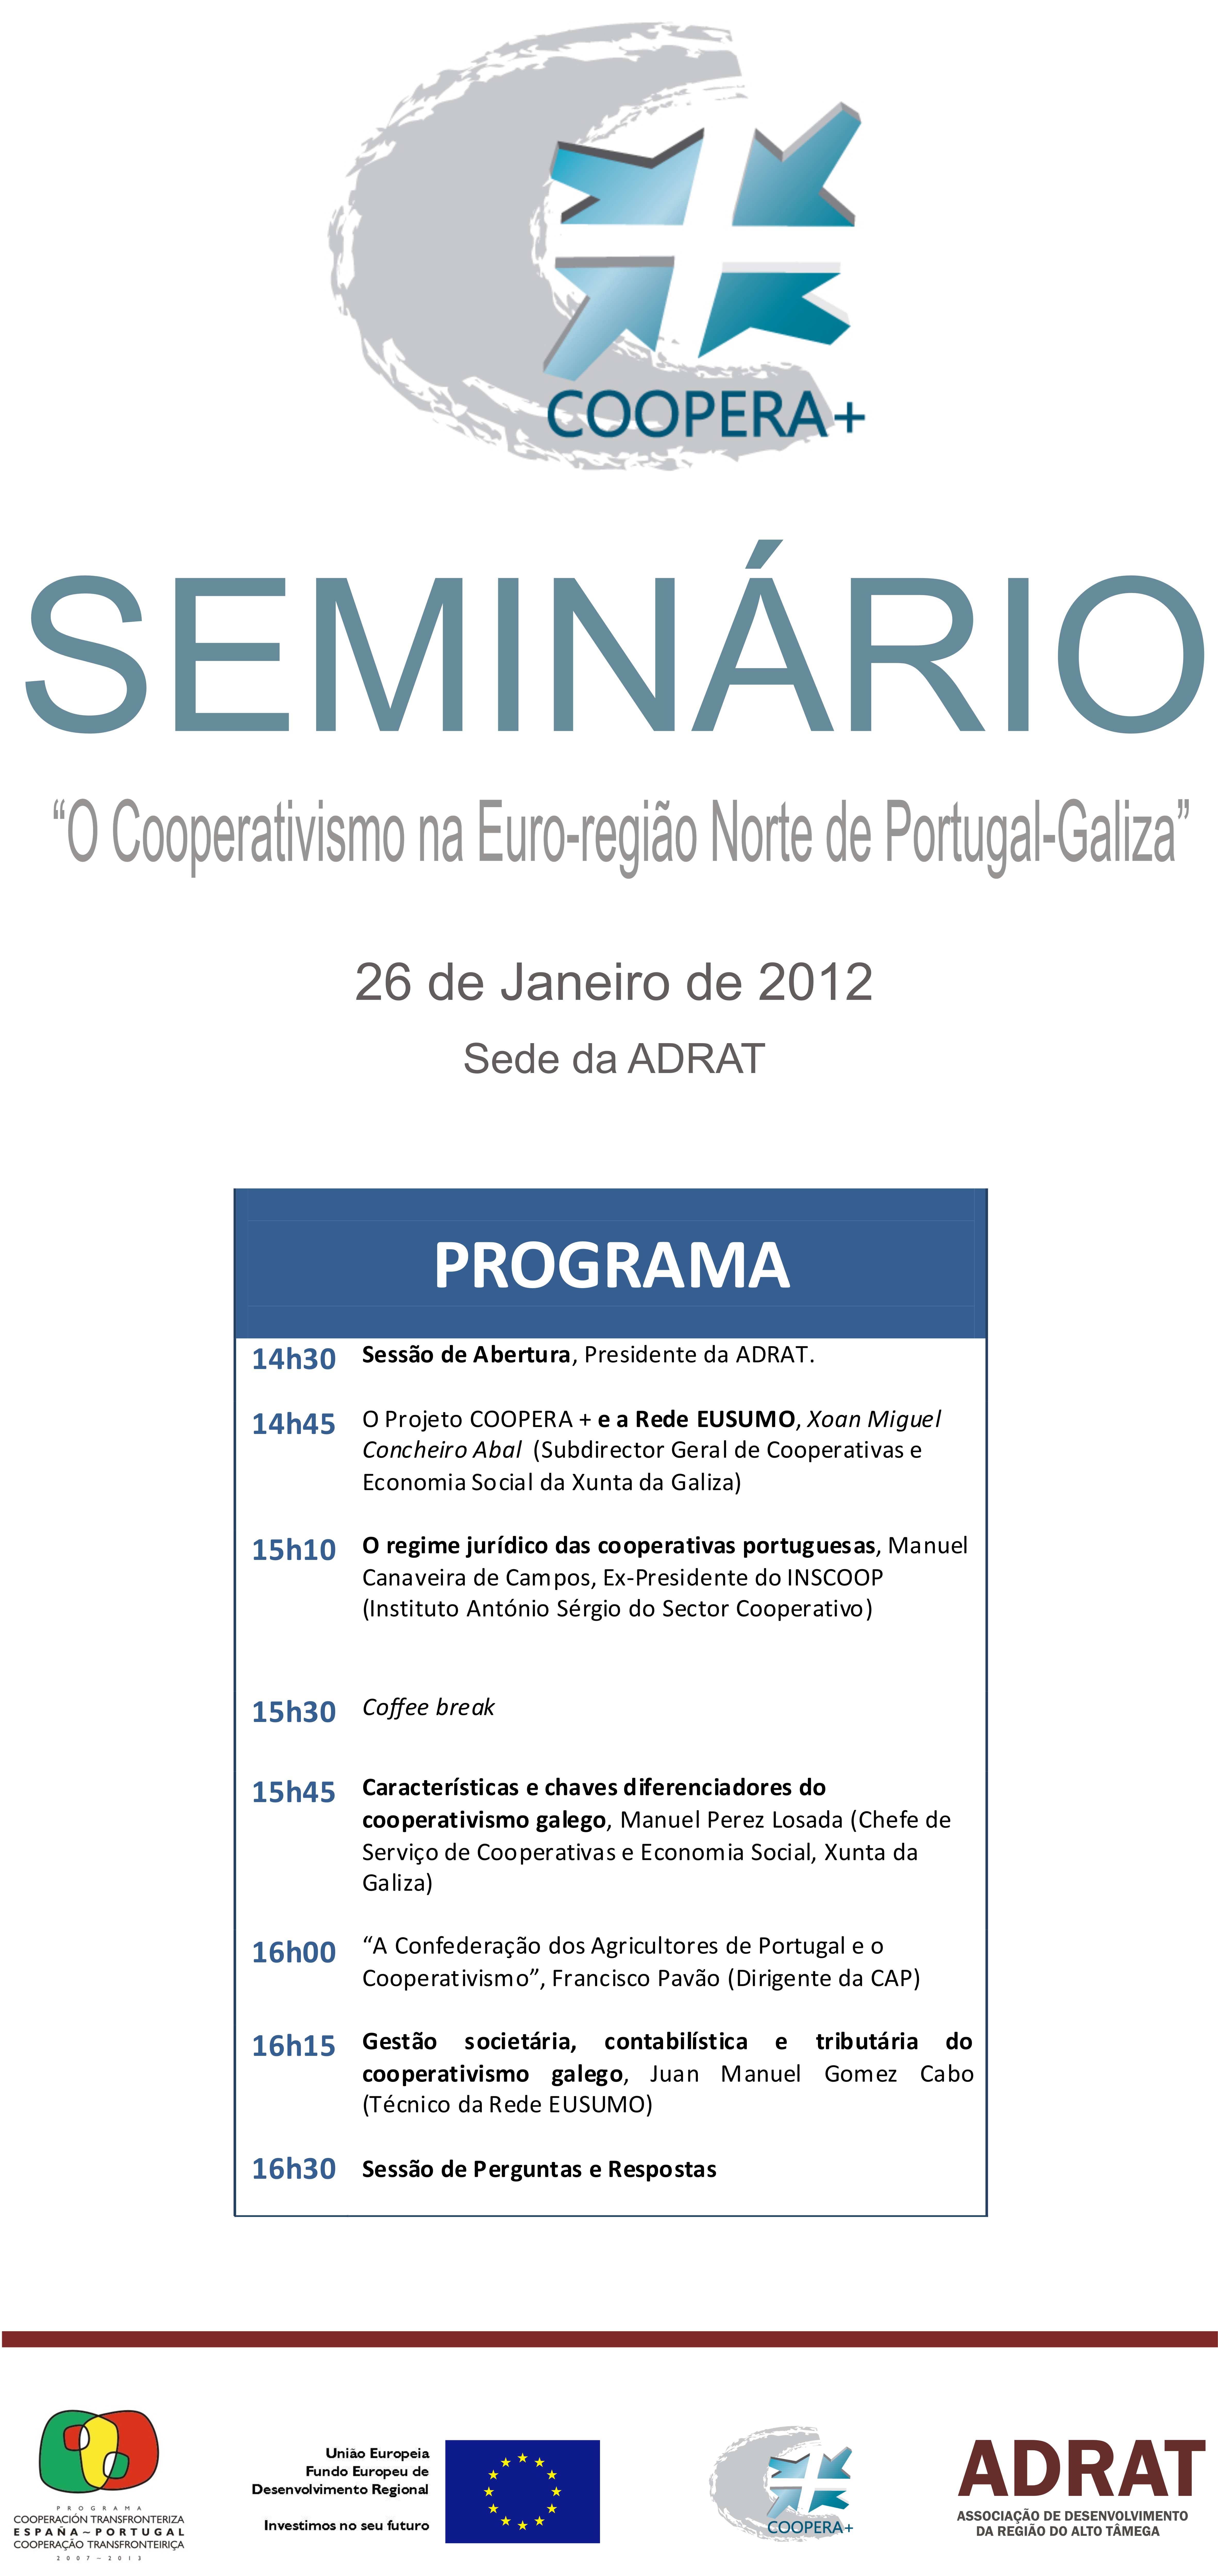 Seminário “O Cooperativismo na Eurorregião Norte de Portugal-Galiza” – projeto 0474_COOPERA_MAS_1_E (Chaves, 26/01/2012)